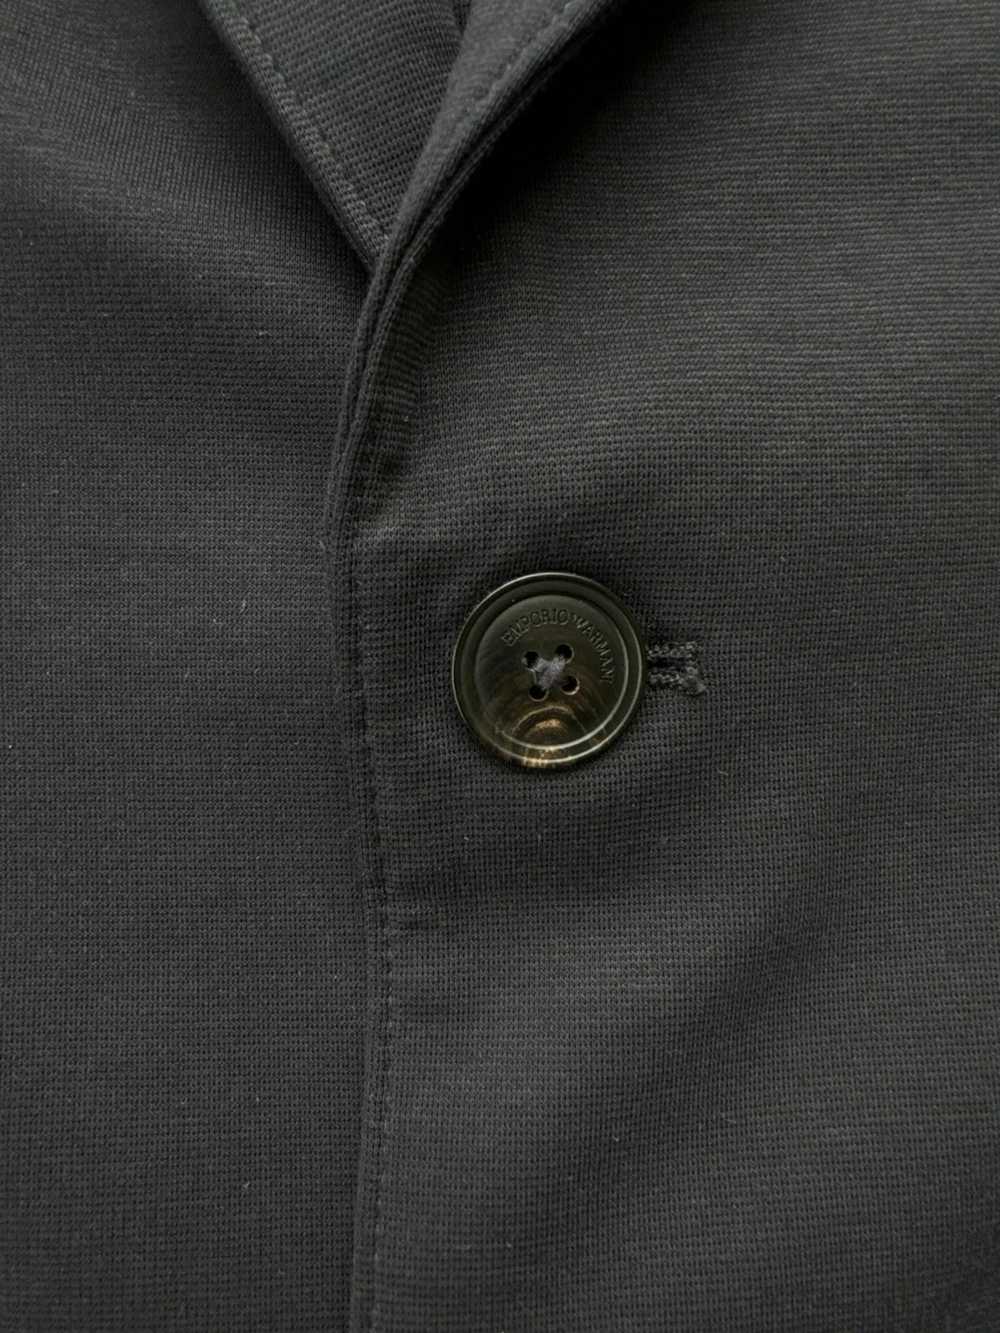 Emporio Armani Armani Wool Stretch Two-Button Spo… - image 4